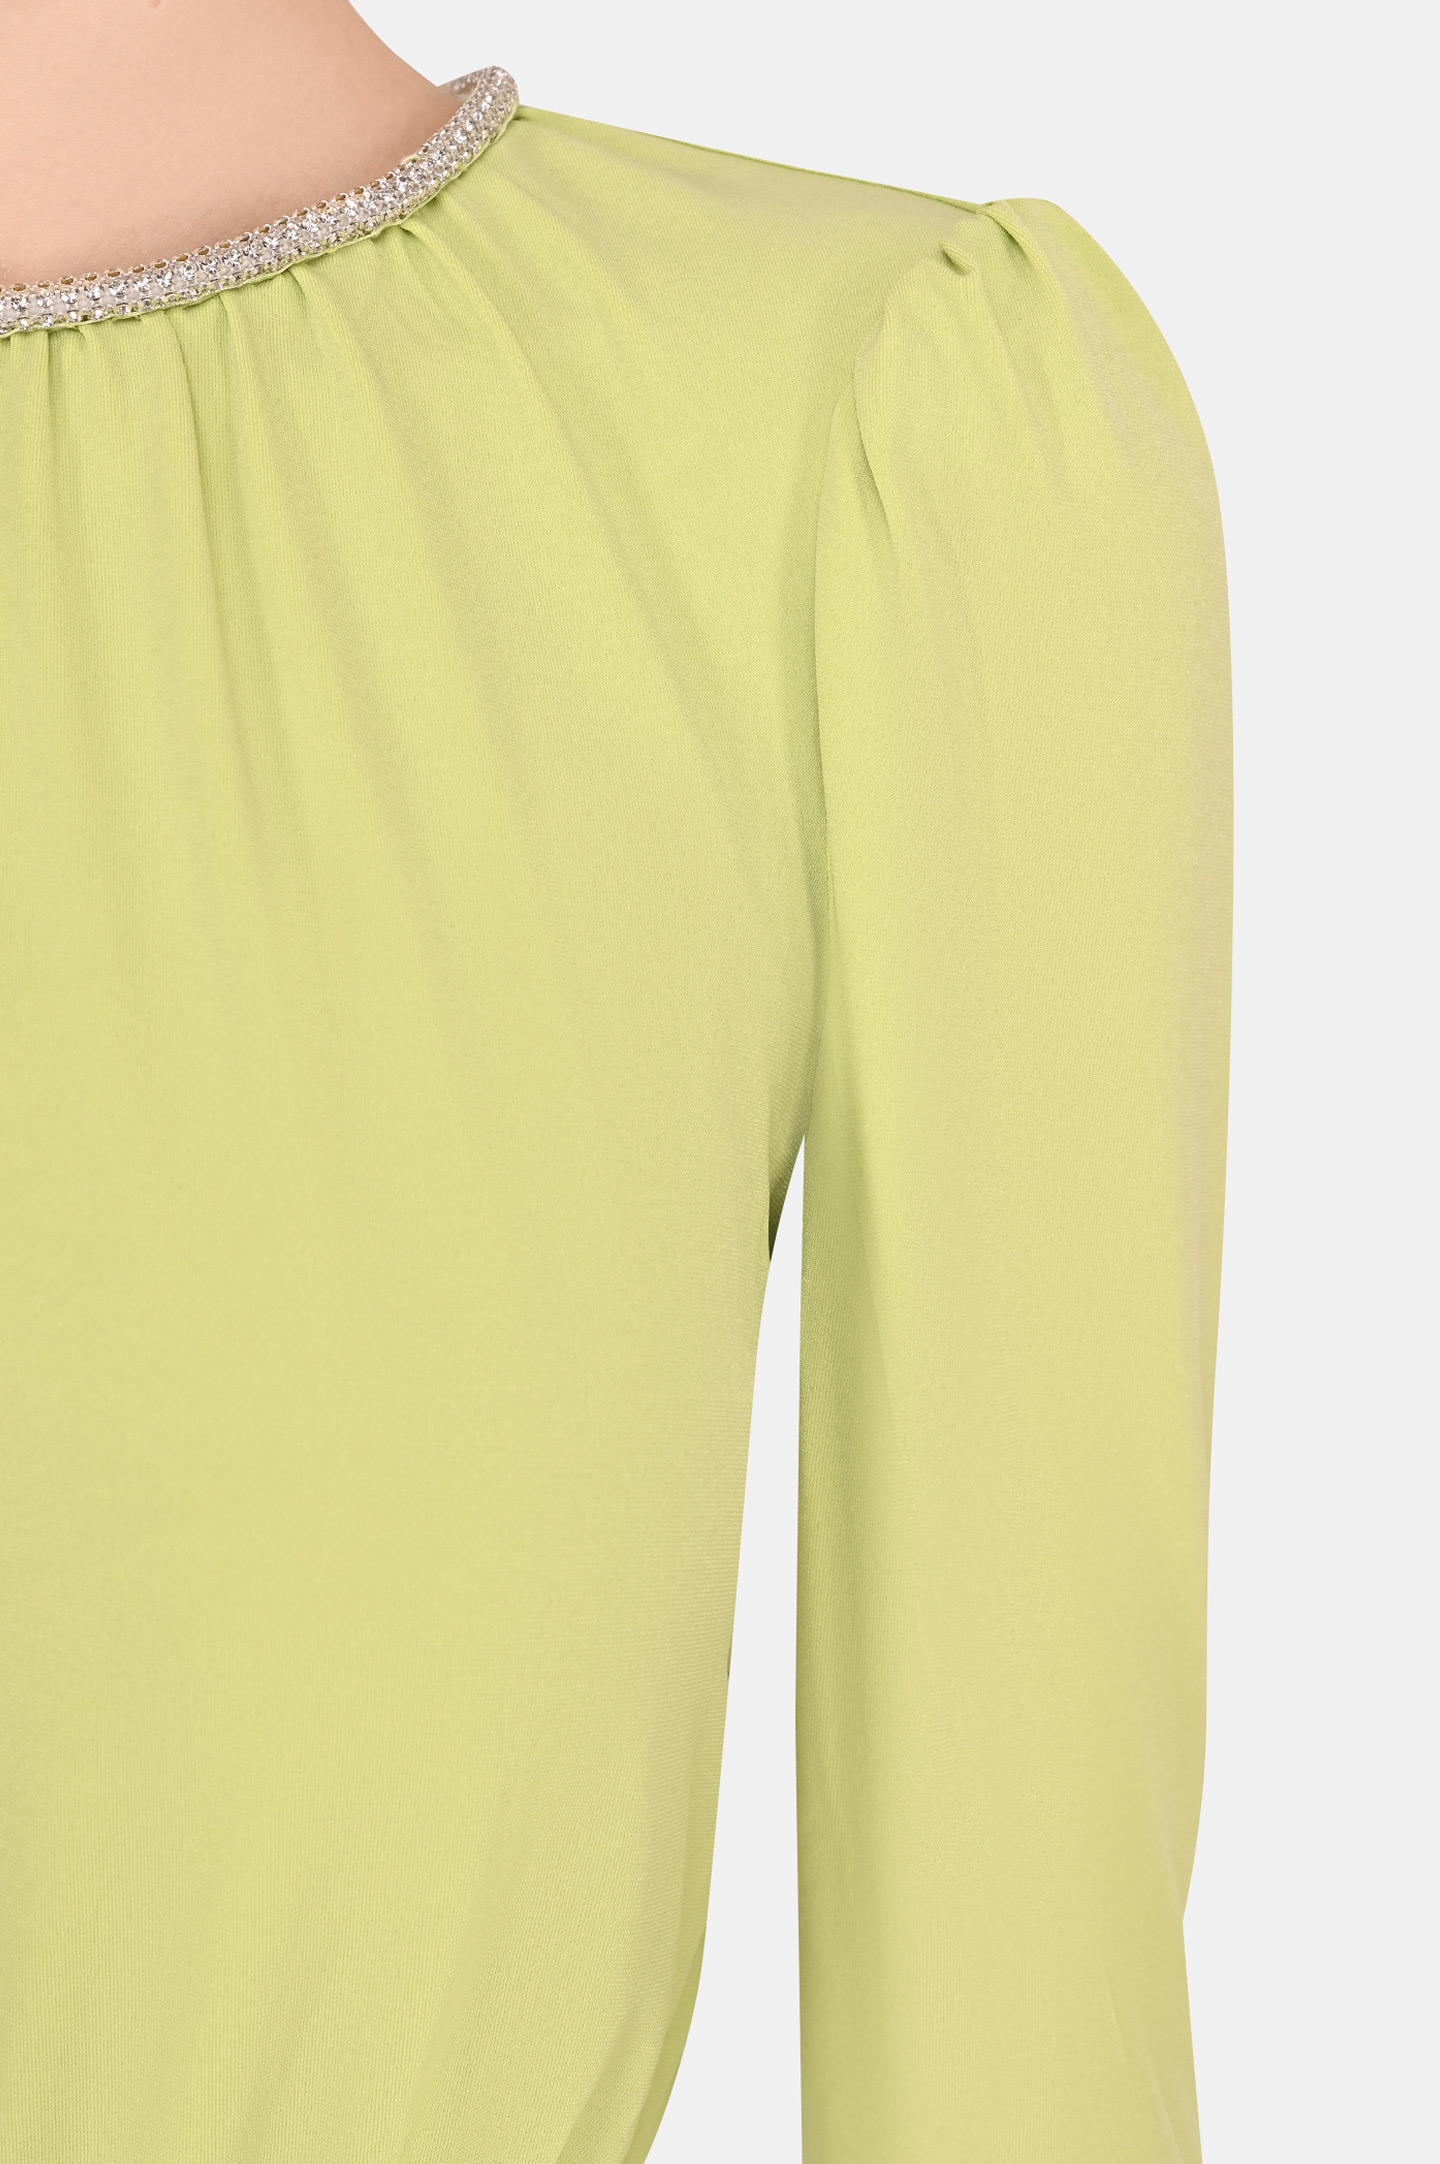 Платье SELF PORTRAIT RS22-043, цвет: Зеленый, Женский